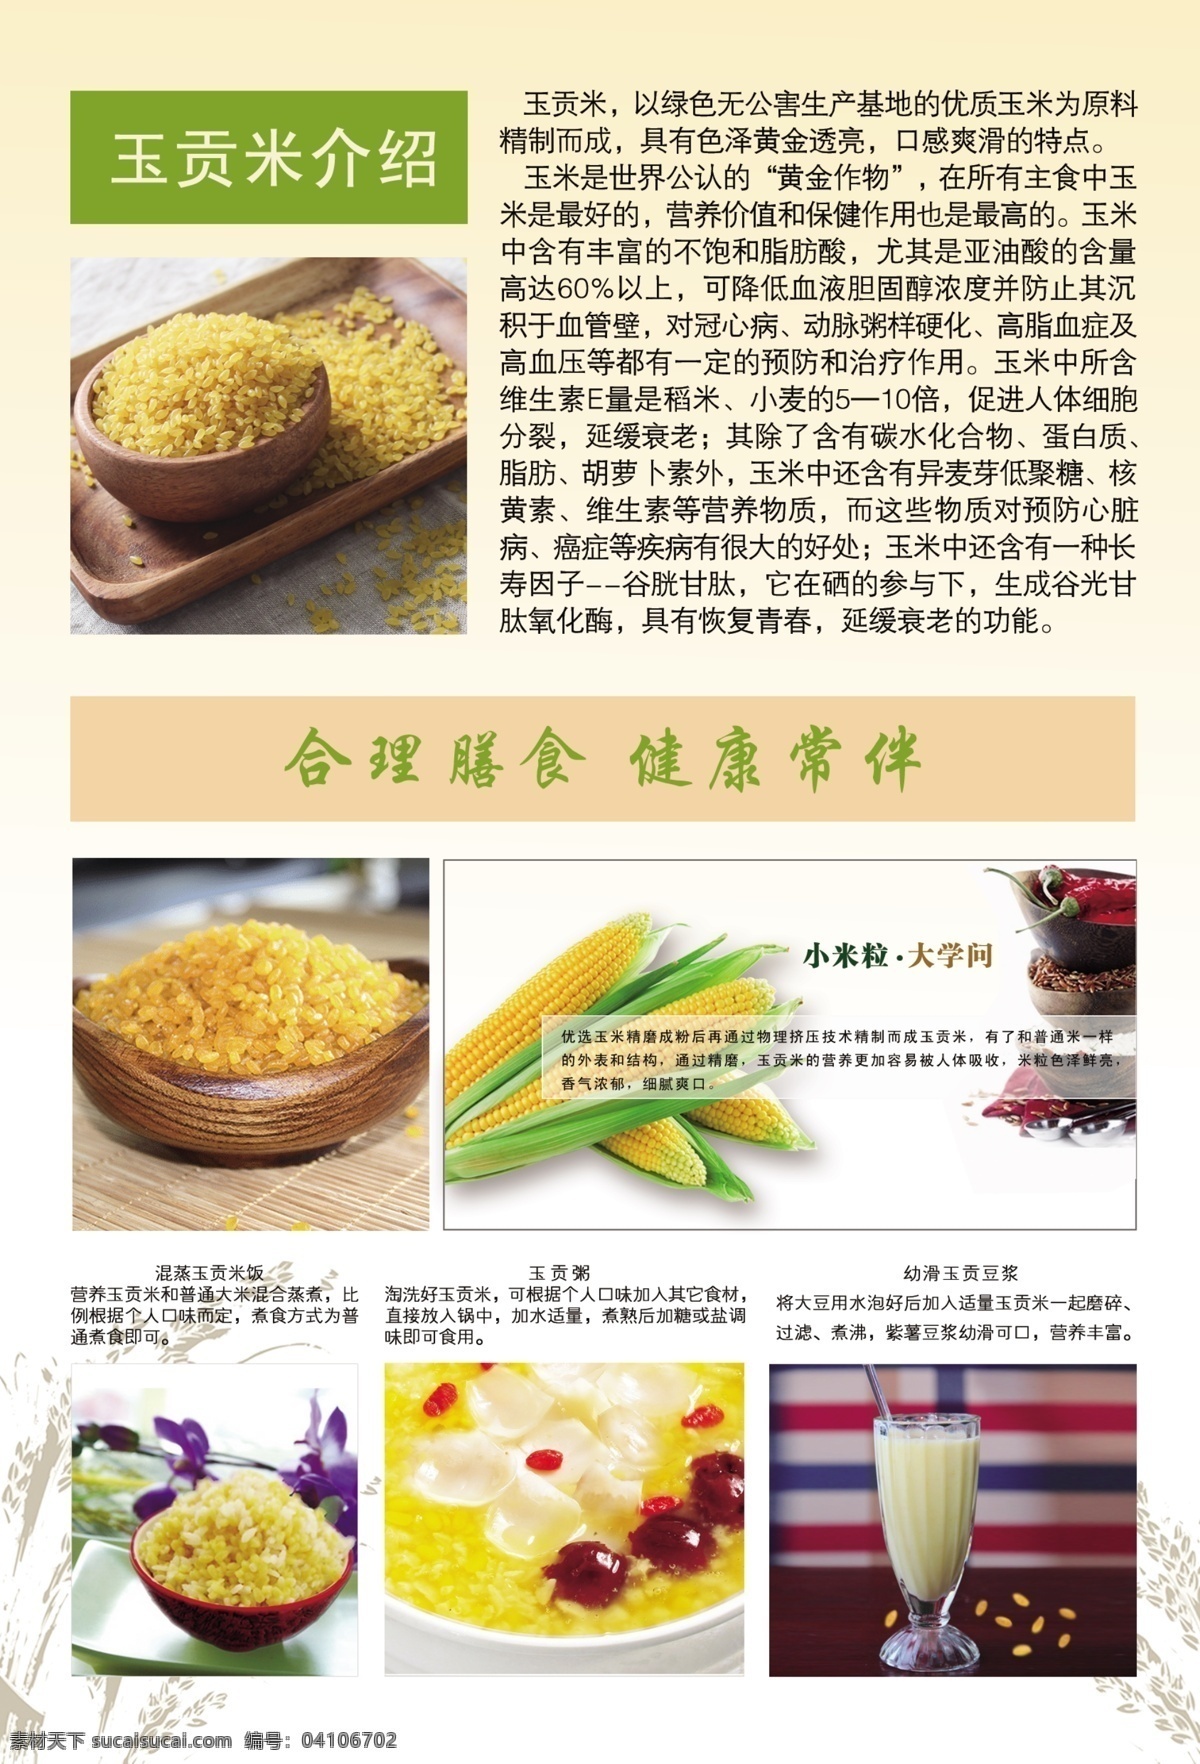 营养 玉 贡米 宣传单 单页 功效 介绍 米 食用方法 宣传 玉米 营养米 玉贡米 原创设计 原创海报